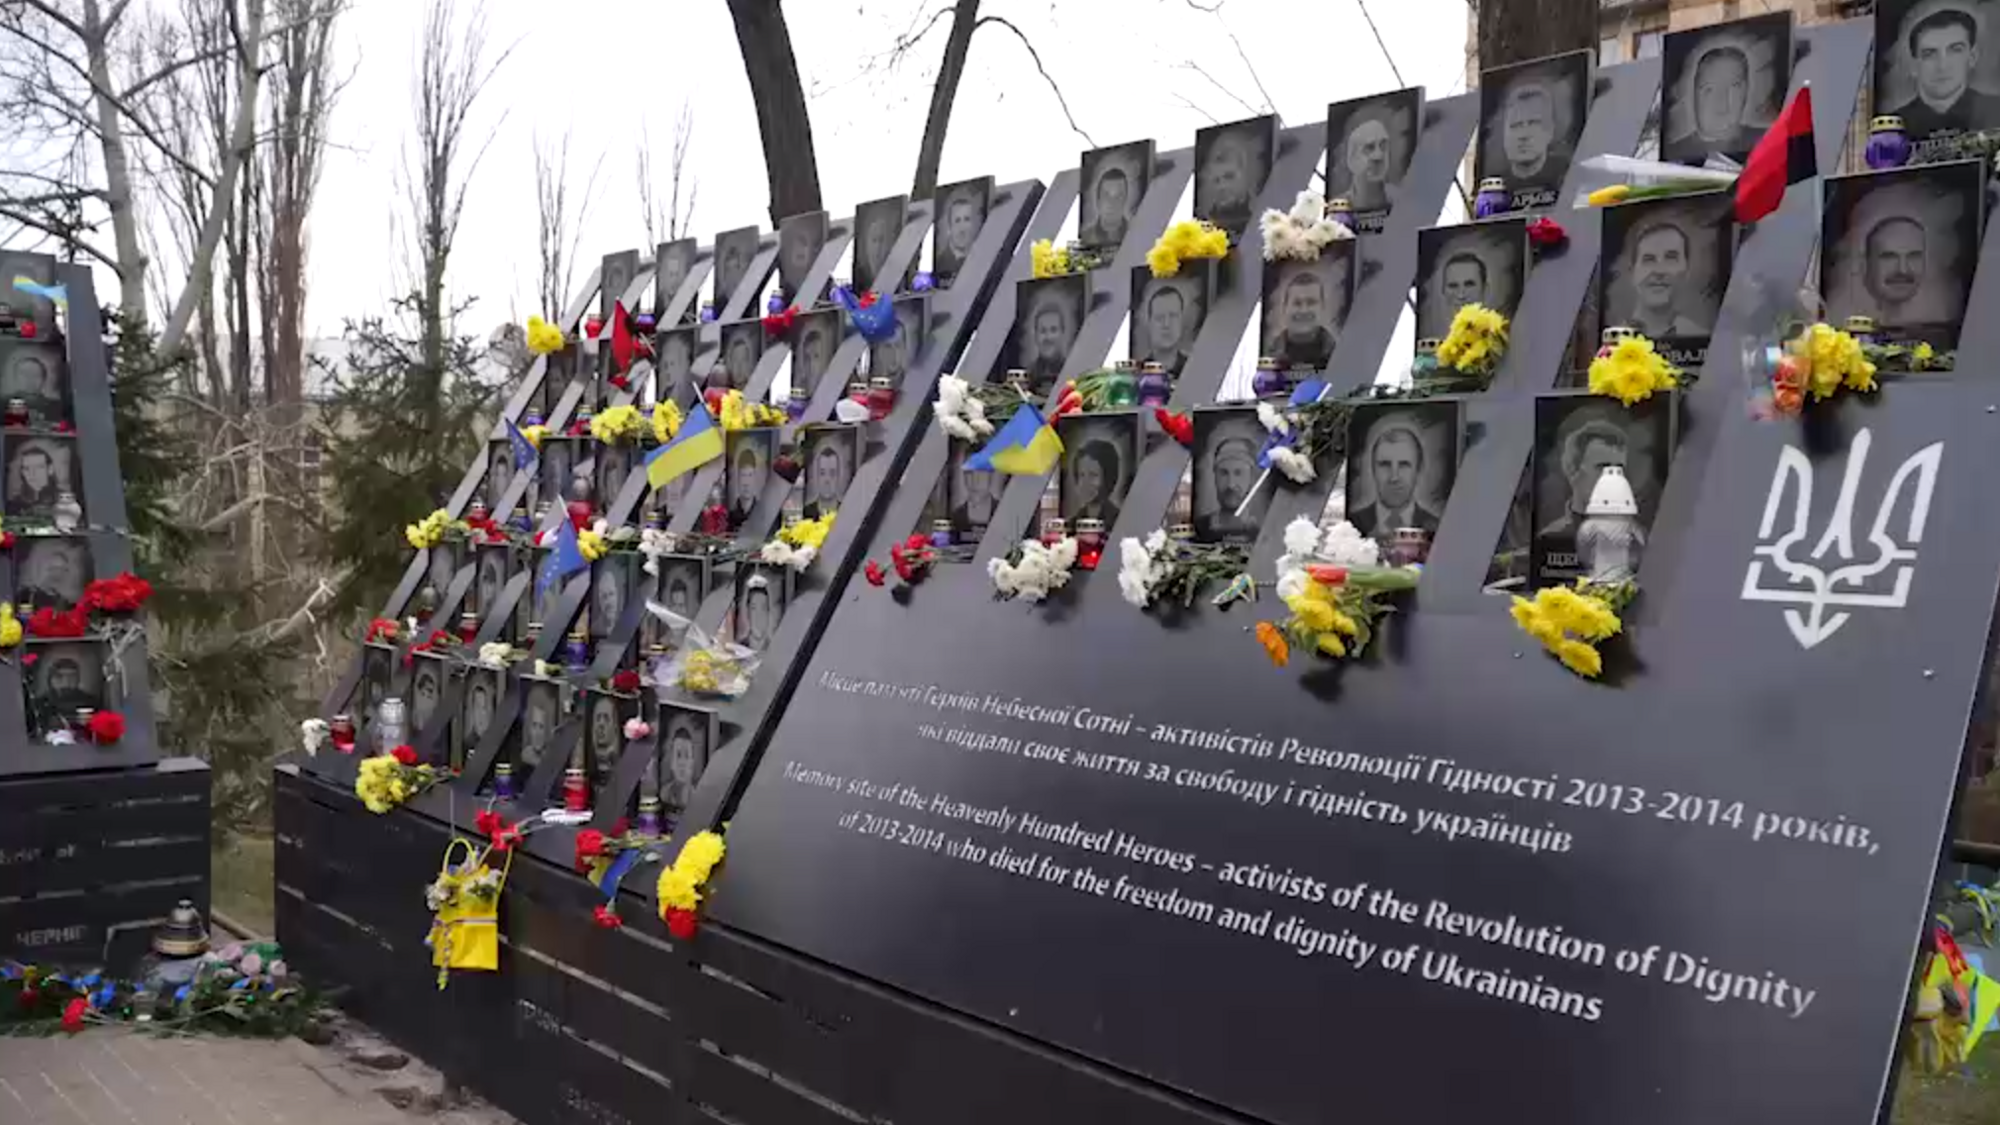 "Десять лет назад мы устояли и дальше стоим": Зеленский почтил память Героев Небесной Сотни. Видео